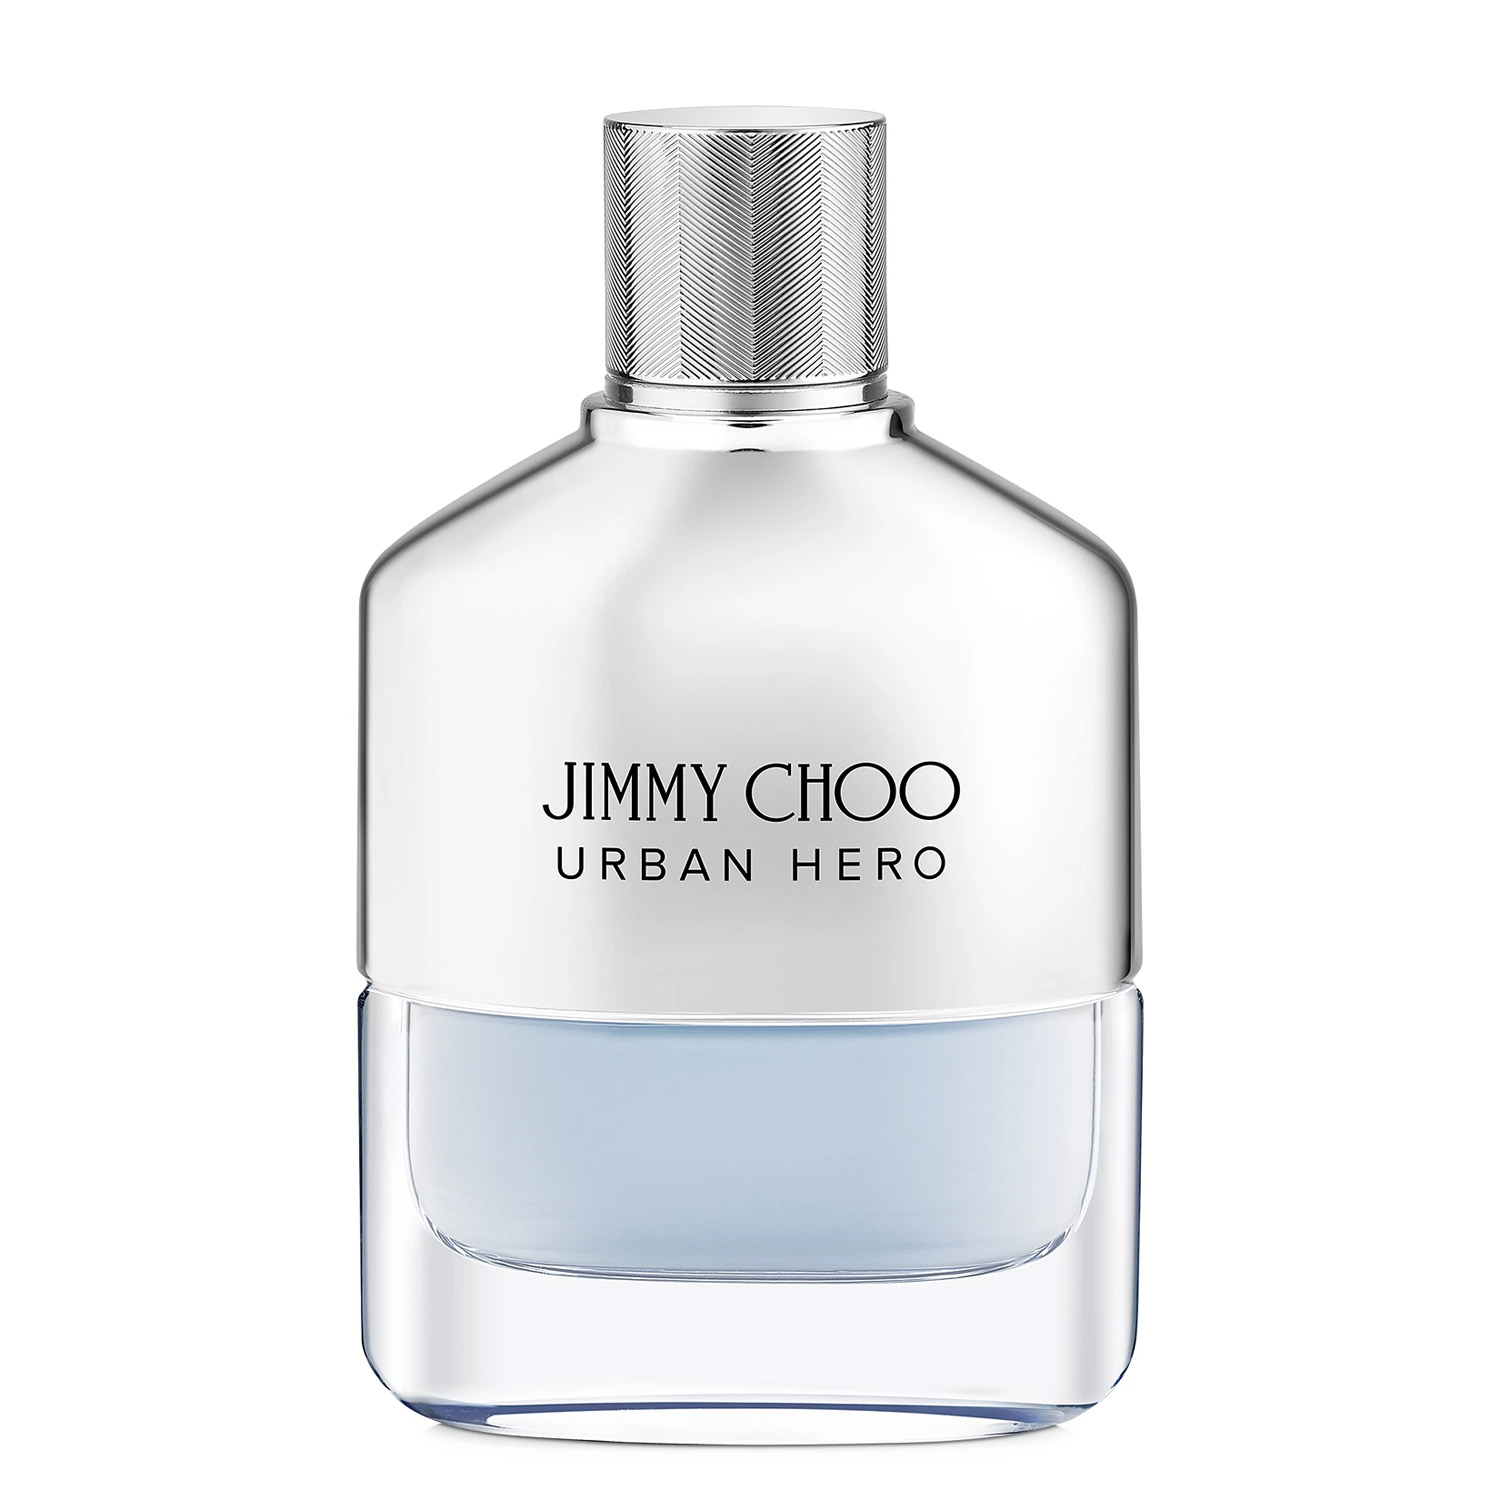 Jimmy Choo Urban Hero Jimmy Choo Image